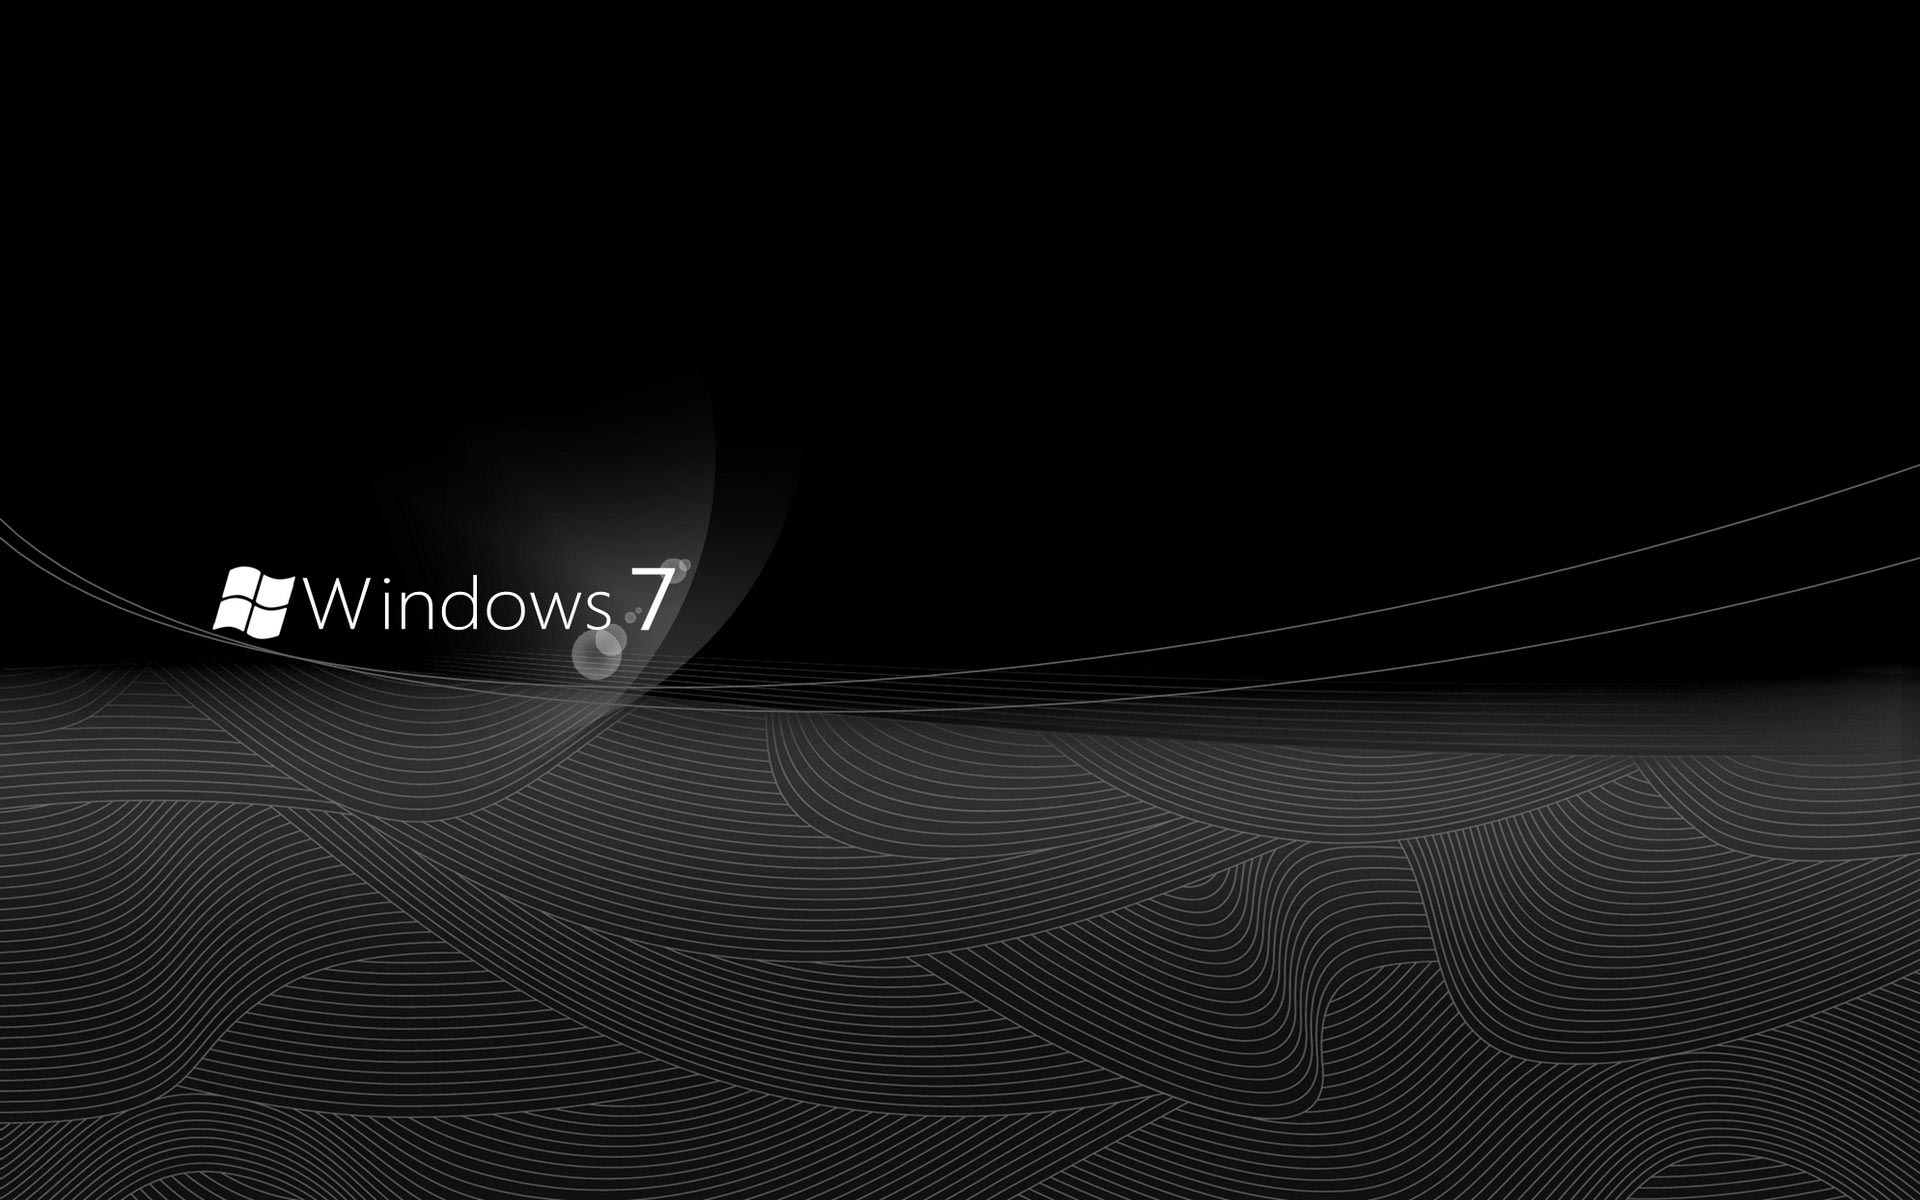 Tải về miễn phí Windows 7 Hình nền đen thanh lịch và tạo... - Windows 7 Hình nền đen thanh lịch và tạo sự tinh tế cho desktop của bạn. Với những hình ảnh đơn giản nhưng đầy ấn tượng này, bạn có thể thể hiện sự chuyên nghiệp và tinh thần tập trung trong công việc một cách rõ ràng.